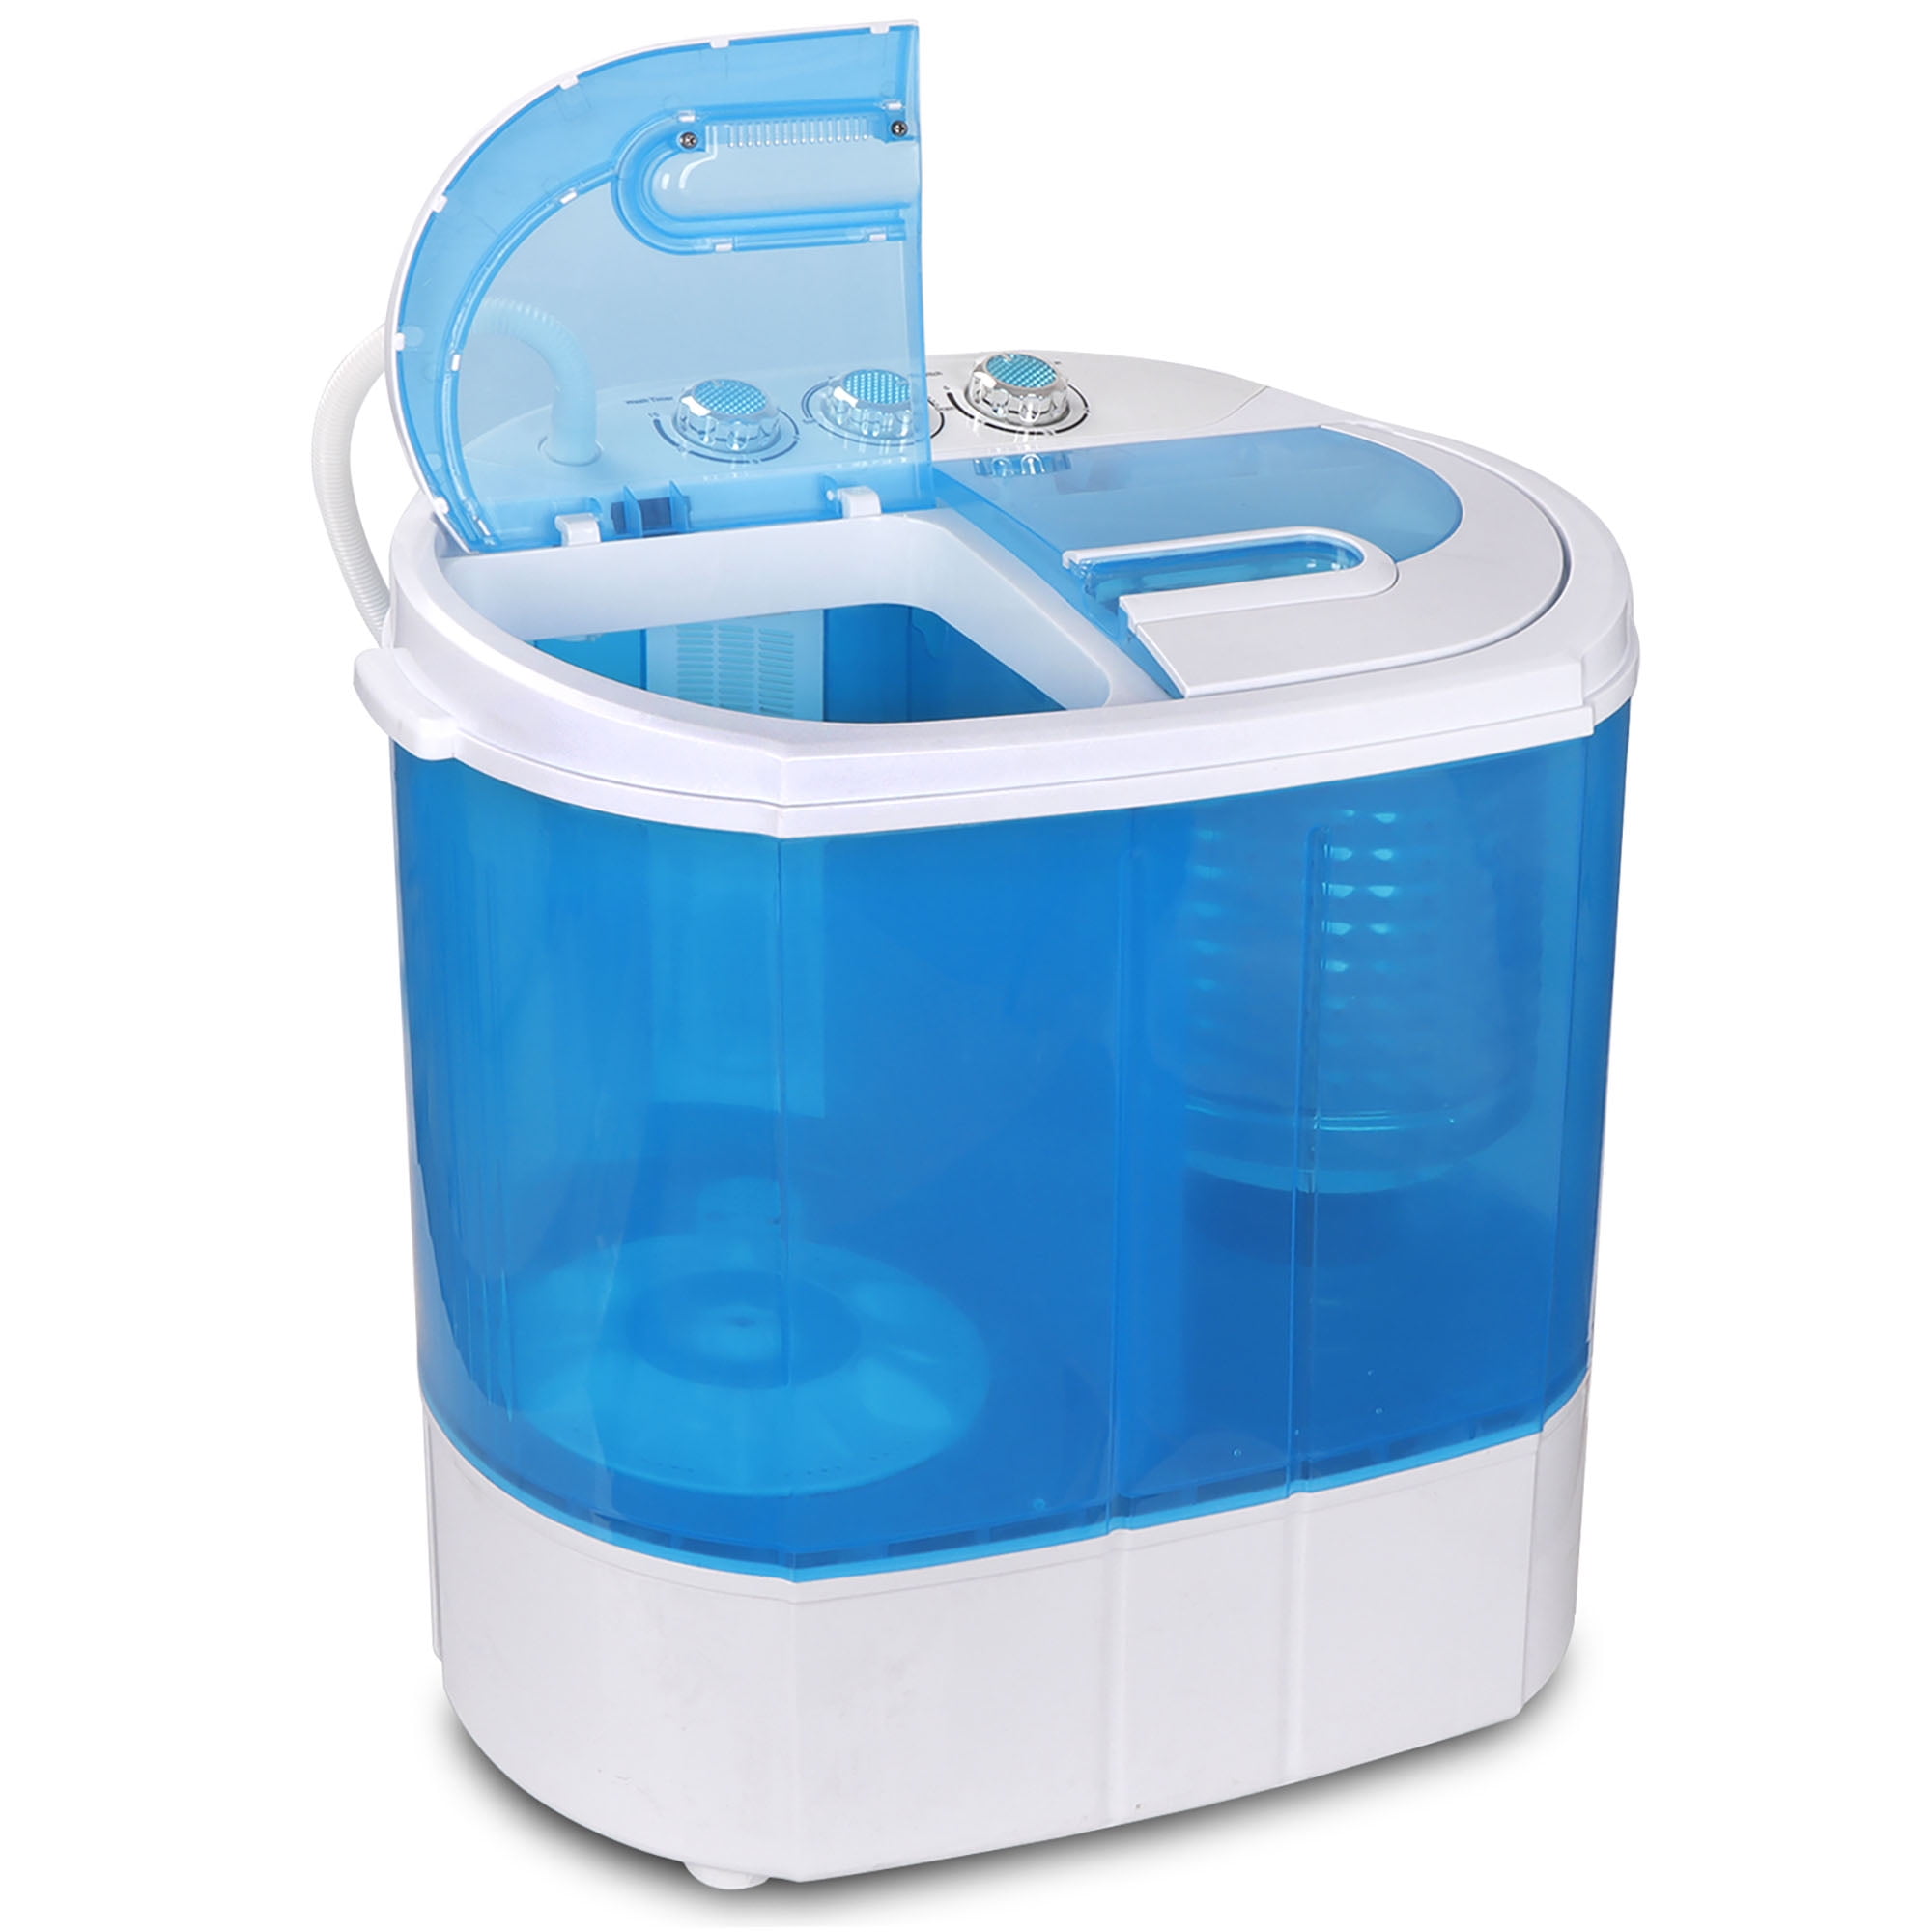 ZENY Portable Washing Machine Compact Twin Tub Mini Washer - Review 2021 